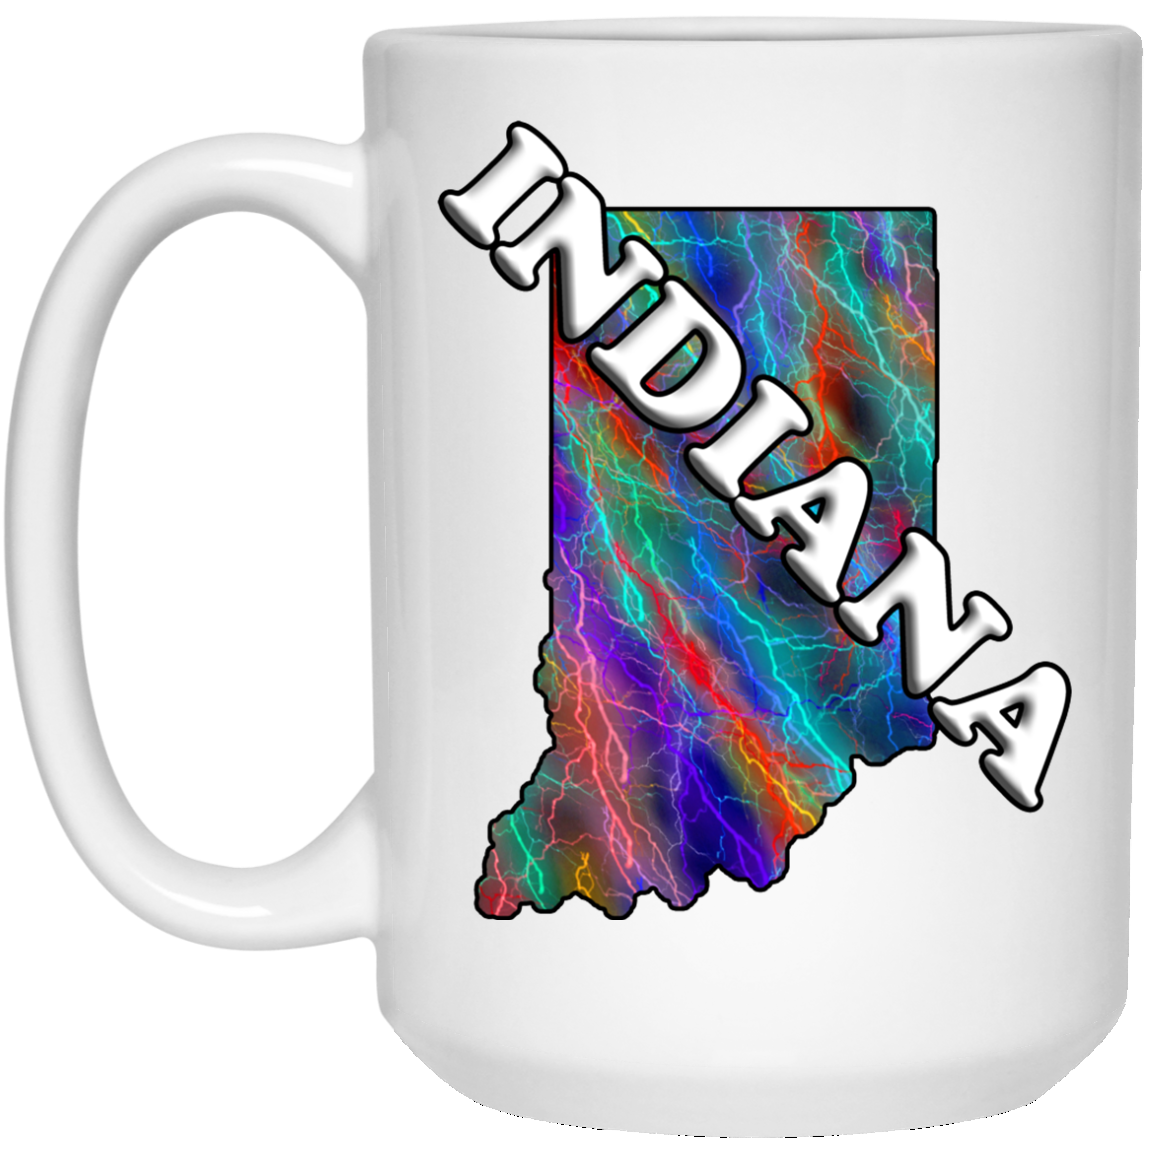 Indiana Mug